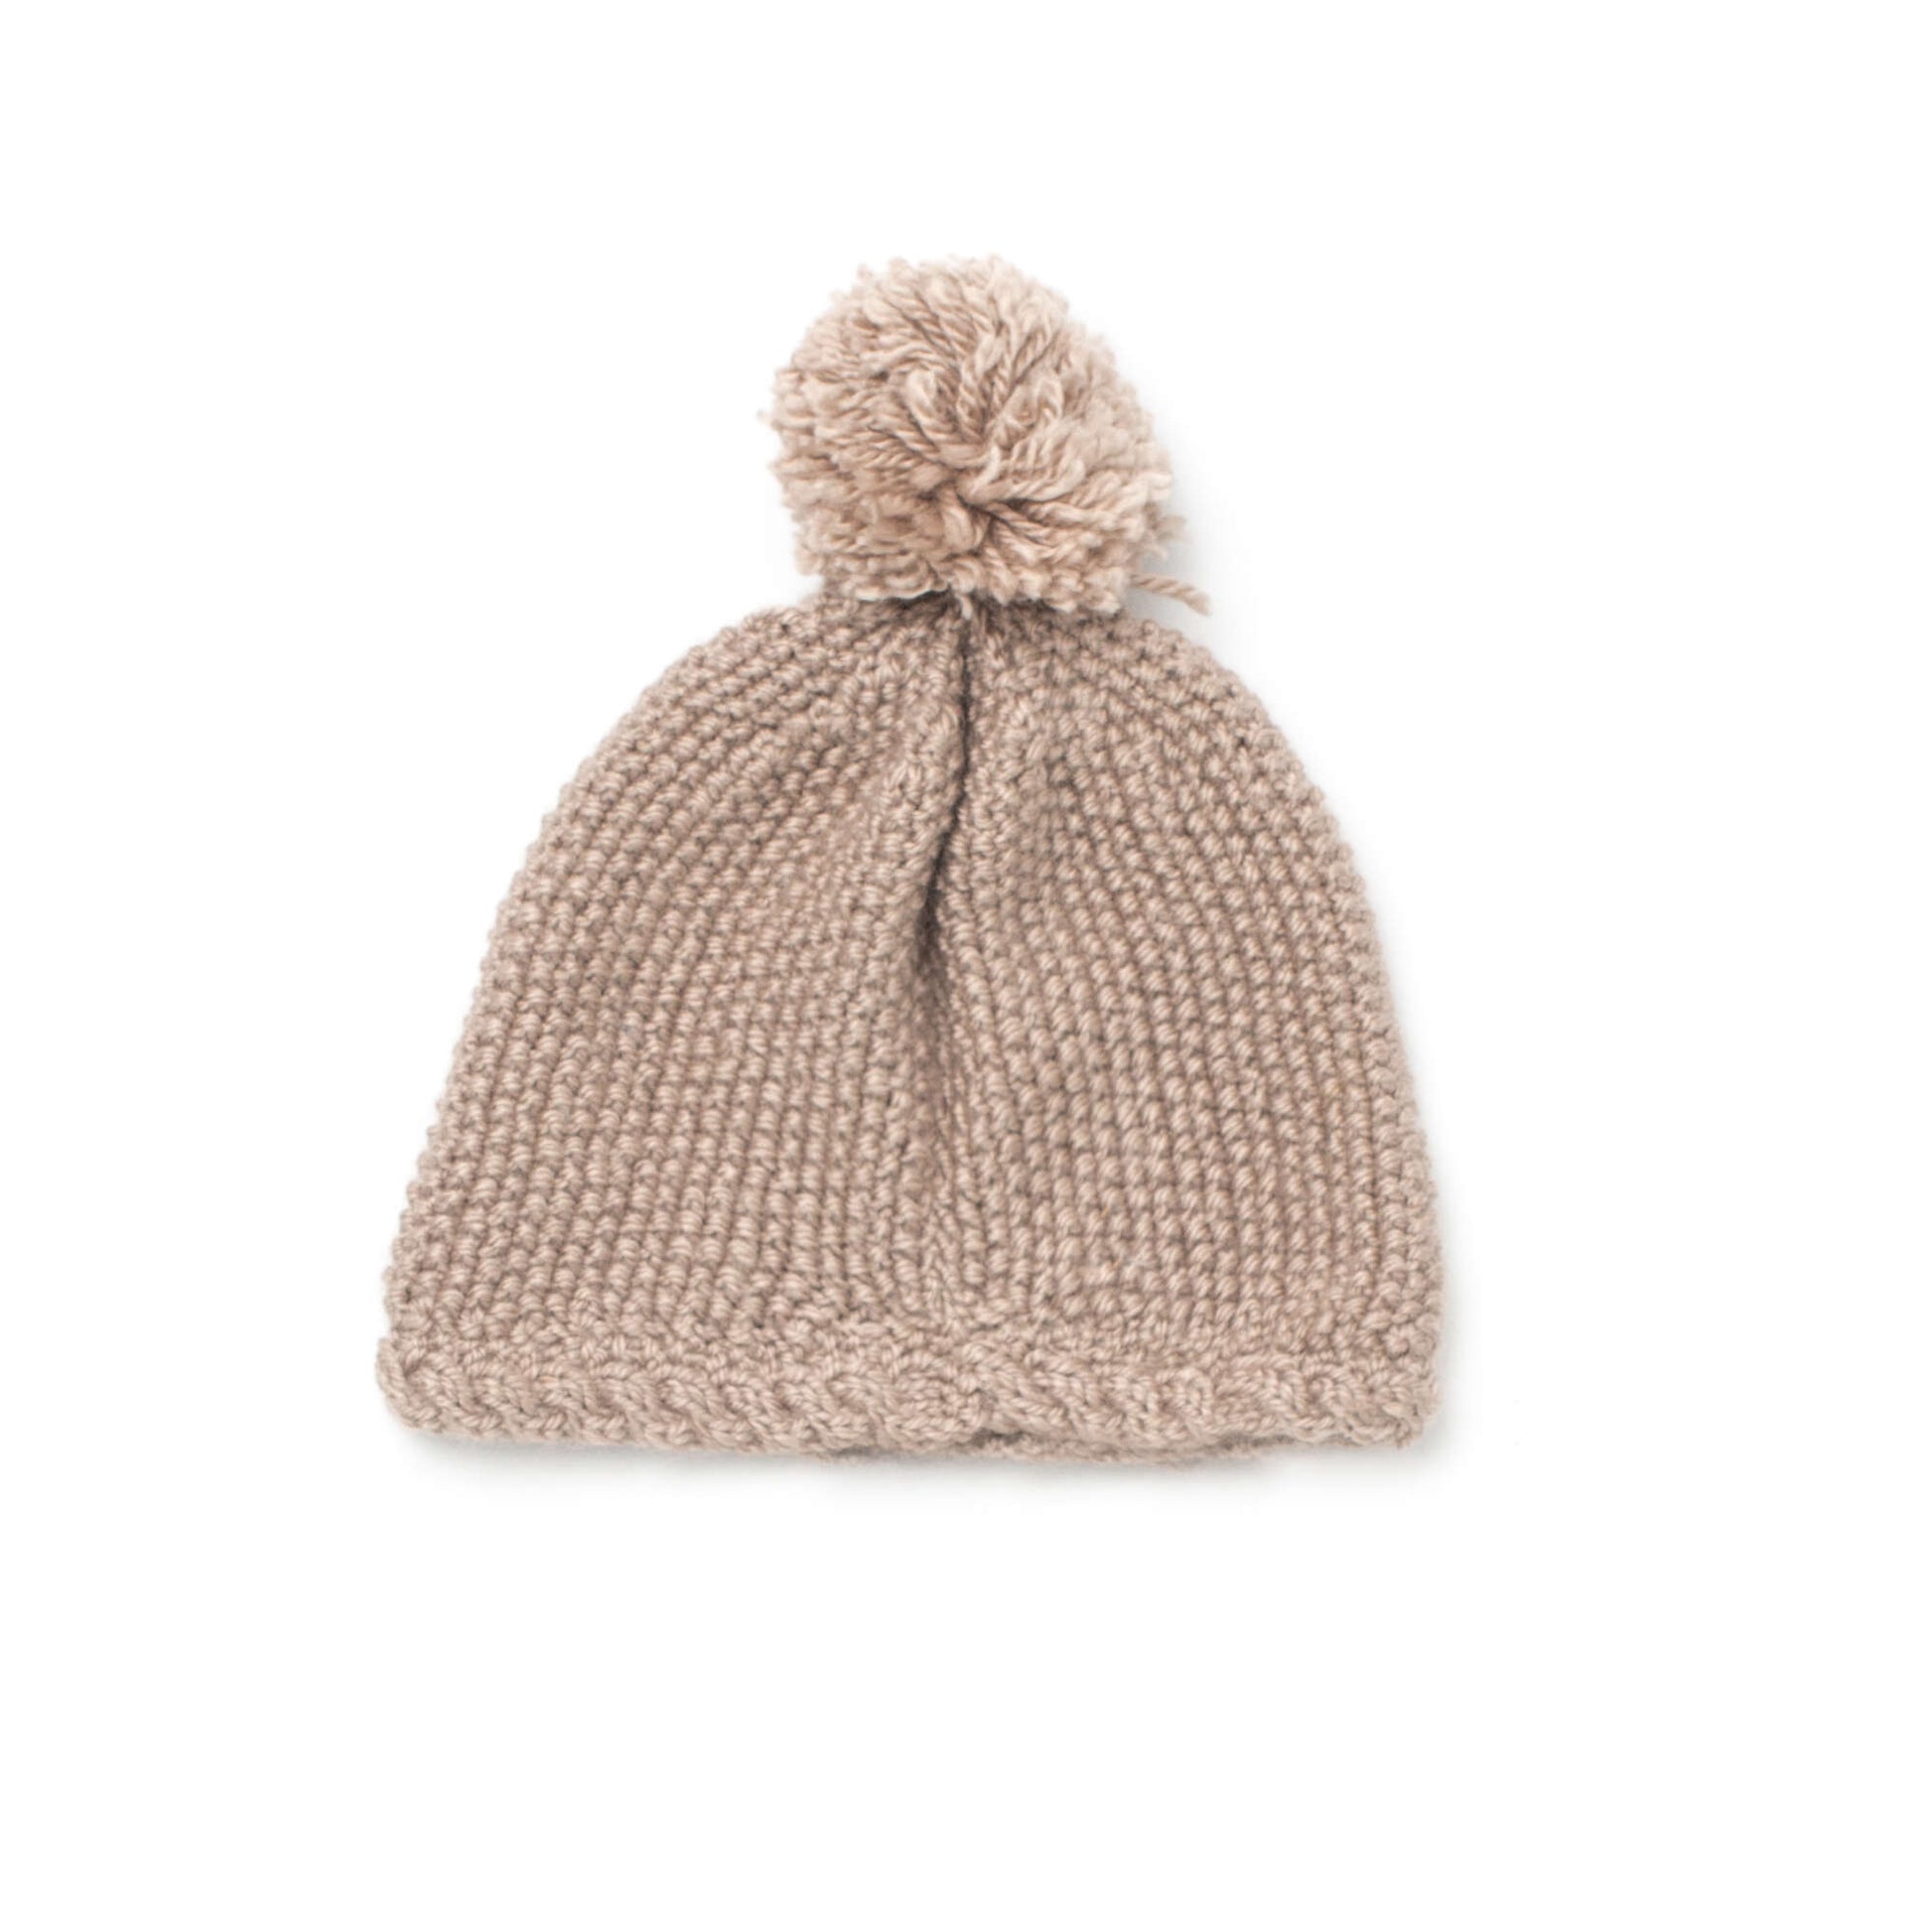 Free Bernat Hat For Little Ears Knit Pattern